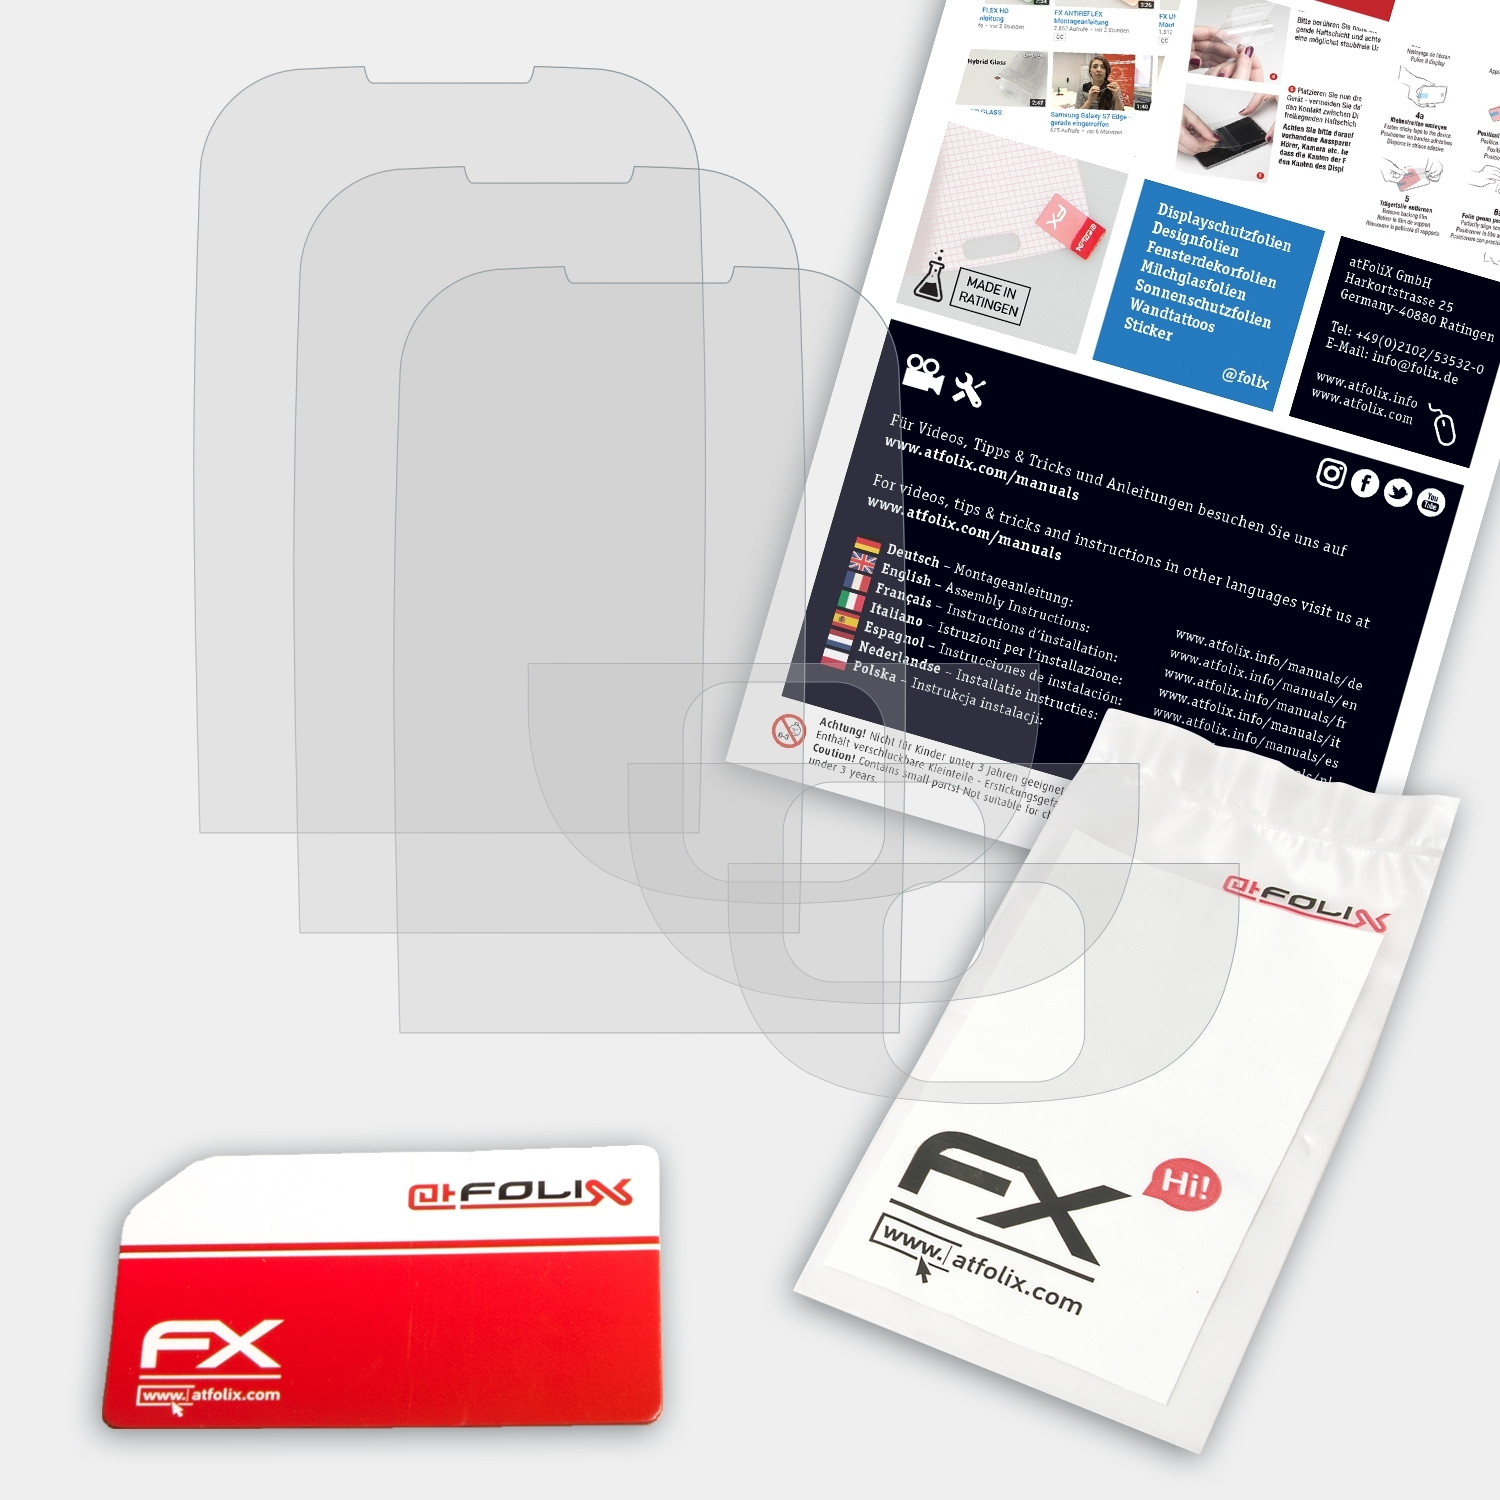 FX-Antireflex 3x Nokia Classic) 2323 Displayschutz(für ATFOLIX